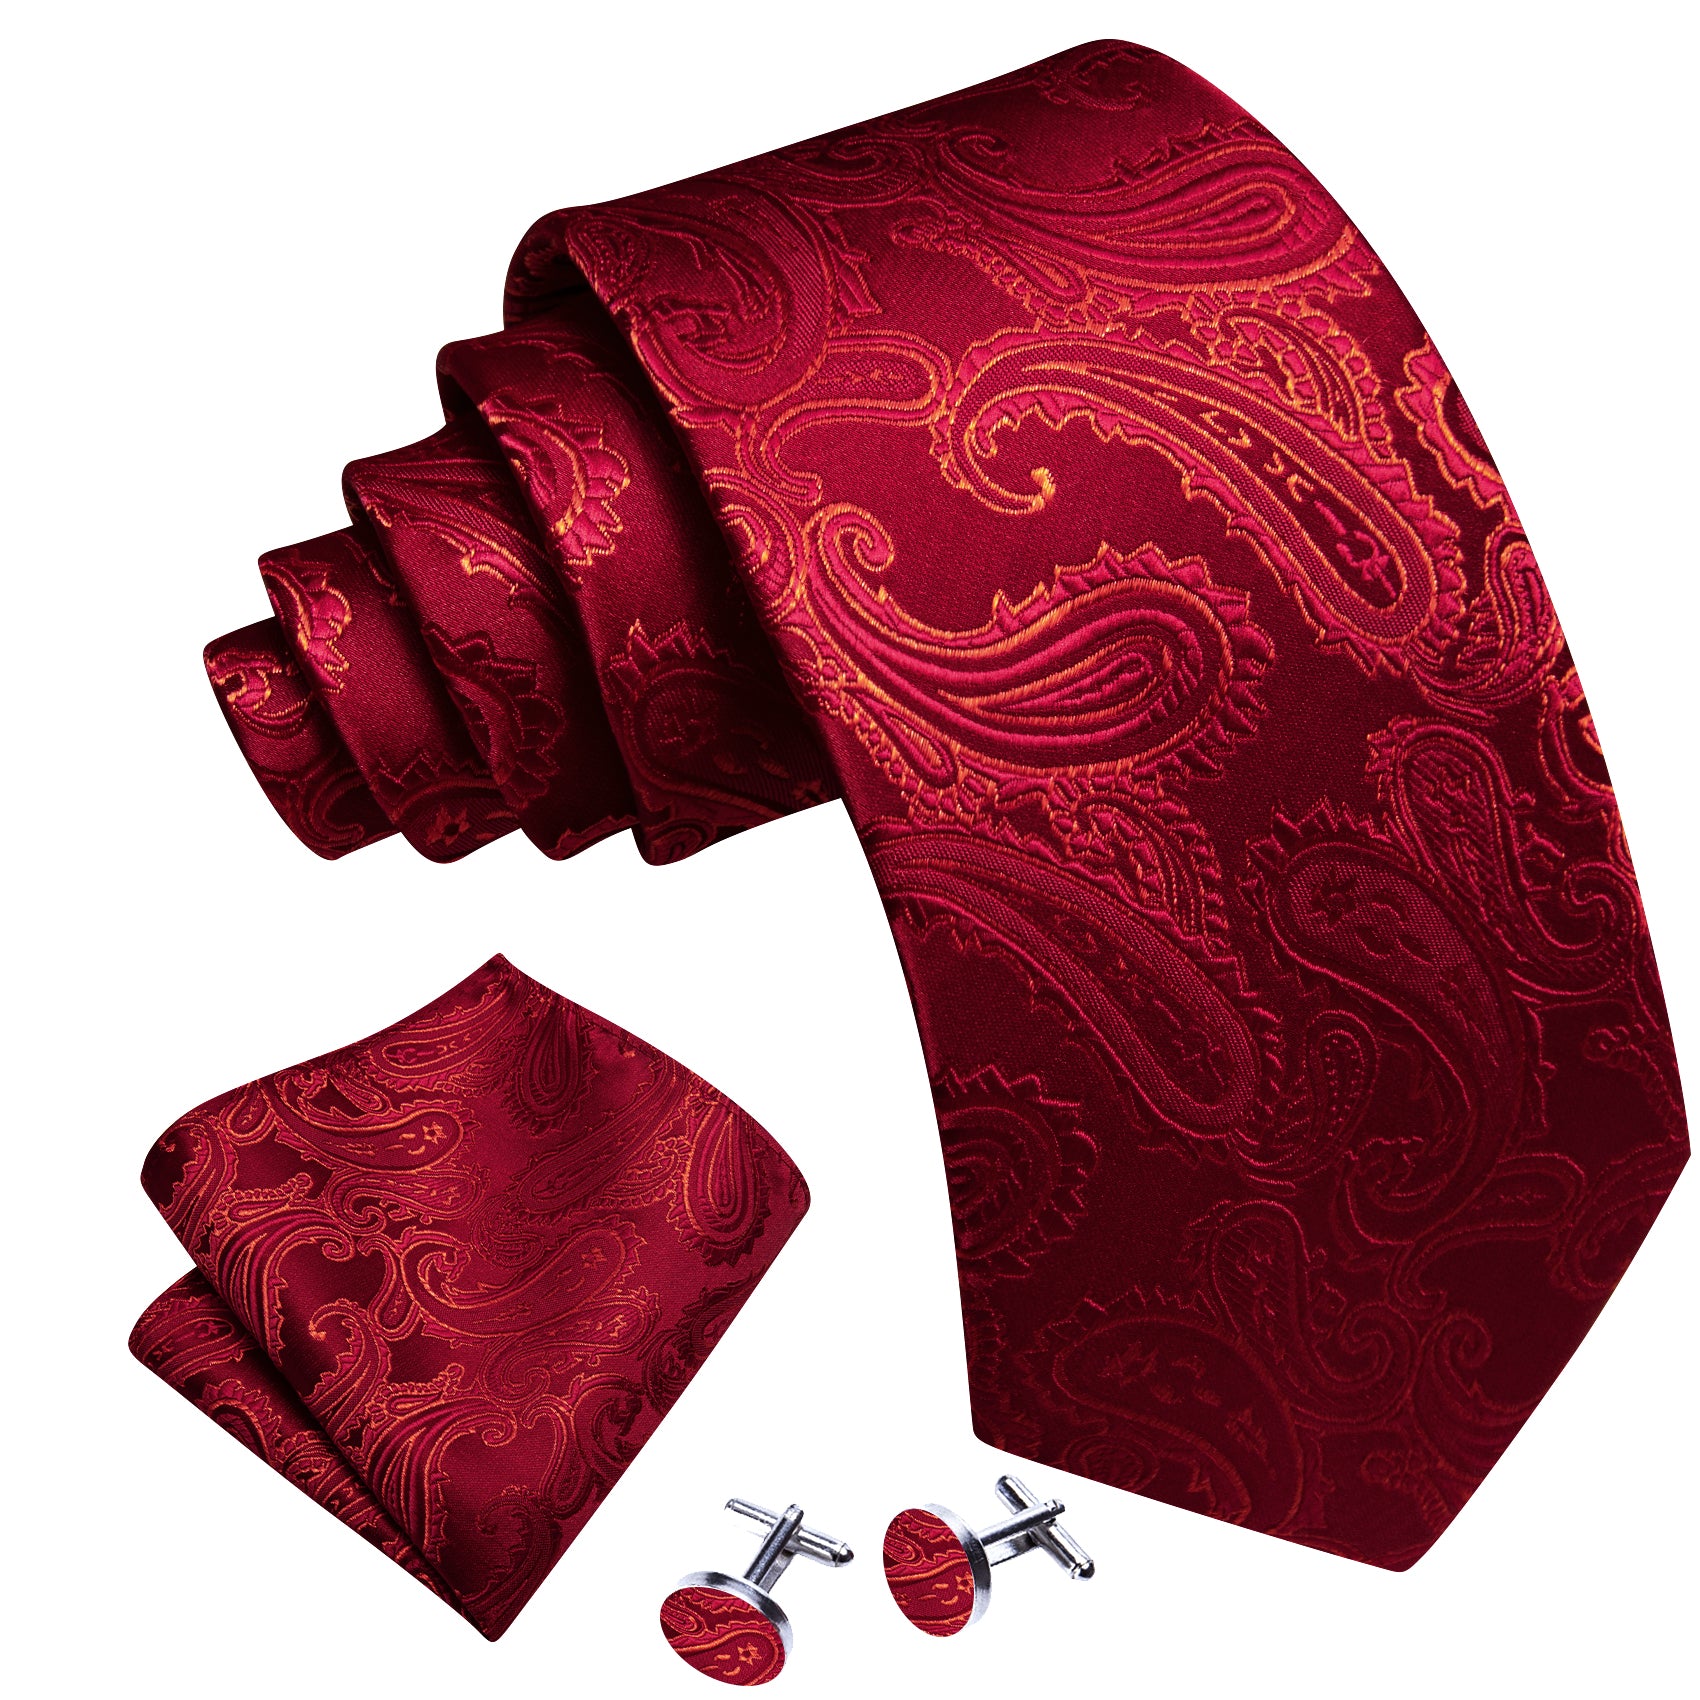 Barry.wang Red Tie Paisley Silk Men's Tie Handkerchief Cufflinks Set Classic